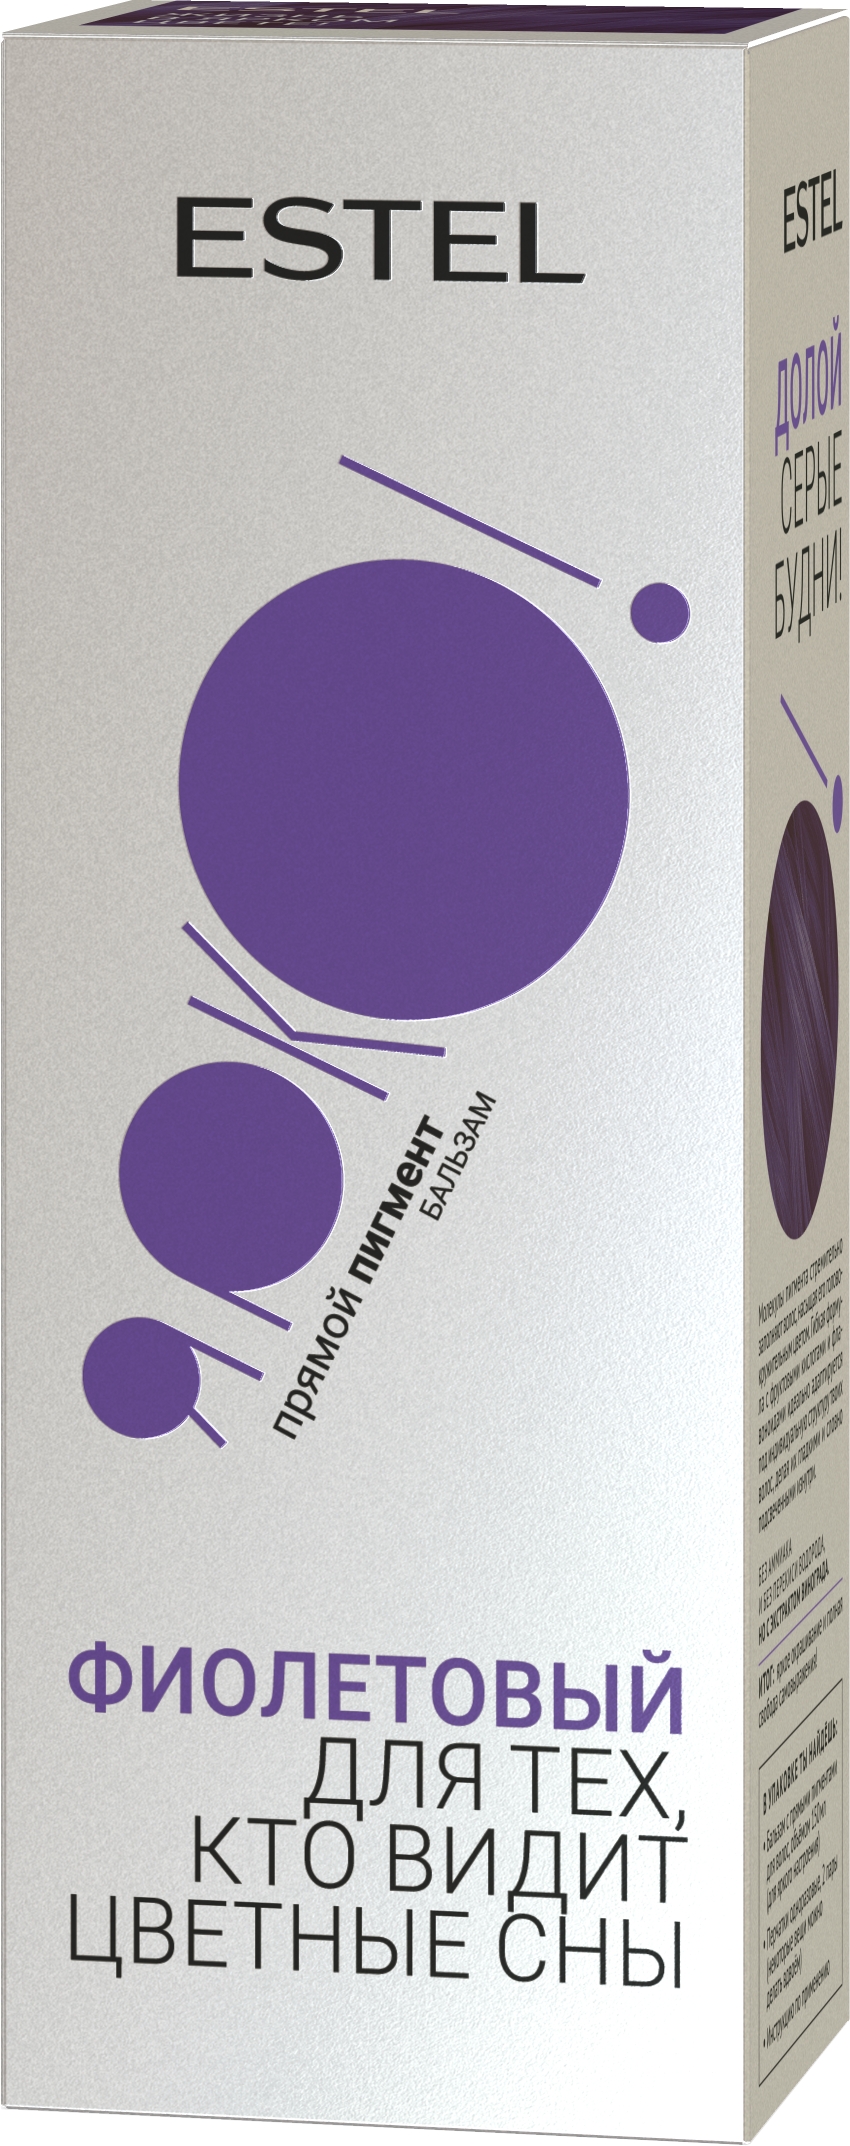 Бальзам для волос с прямым пигментом Estel ЯРКО Фиолетовый 150мл - в интернет-магазине TUT-BEAUTY.BY с доставкой.